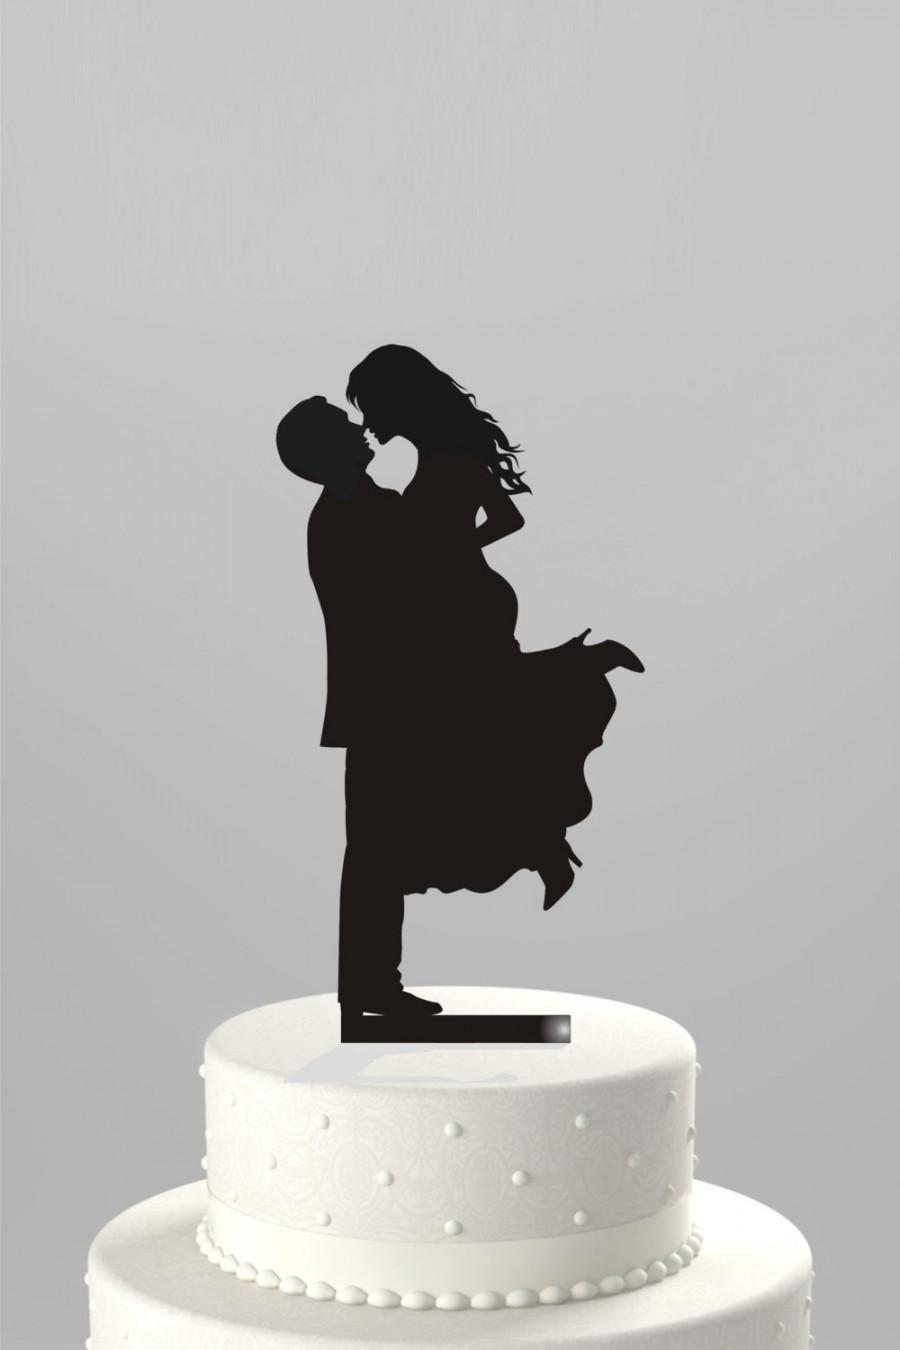 زفاف - SALE Price!! Ships Next Day - Wedding Cake Topper Silhouette Groom Lifting his Bride, BLACK Acrylic Cake Topper [CT17]